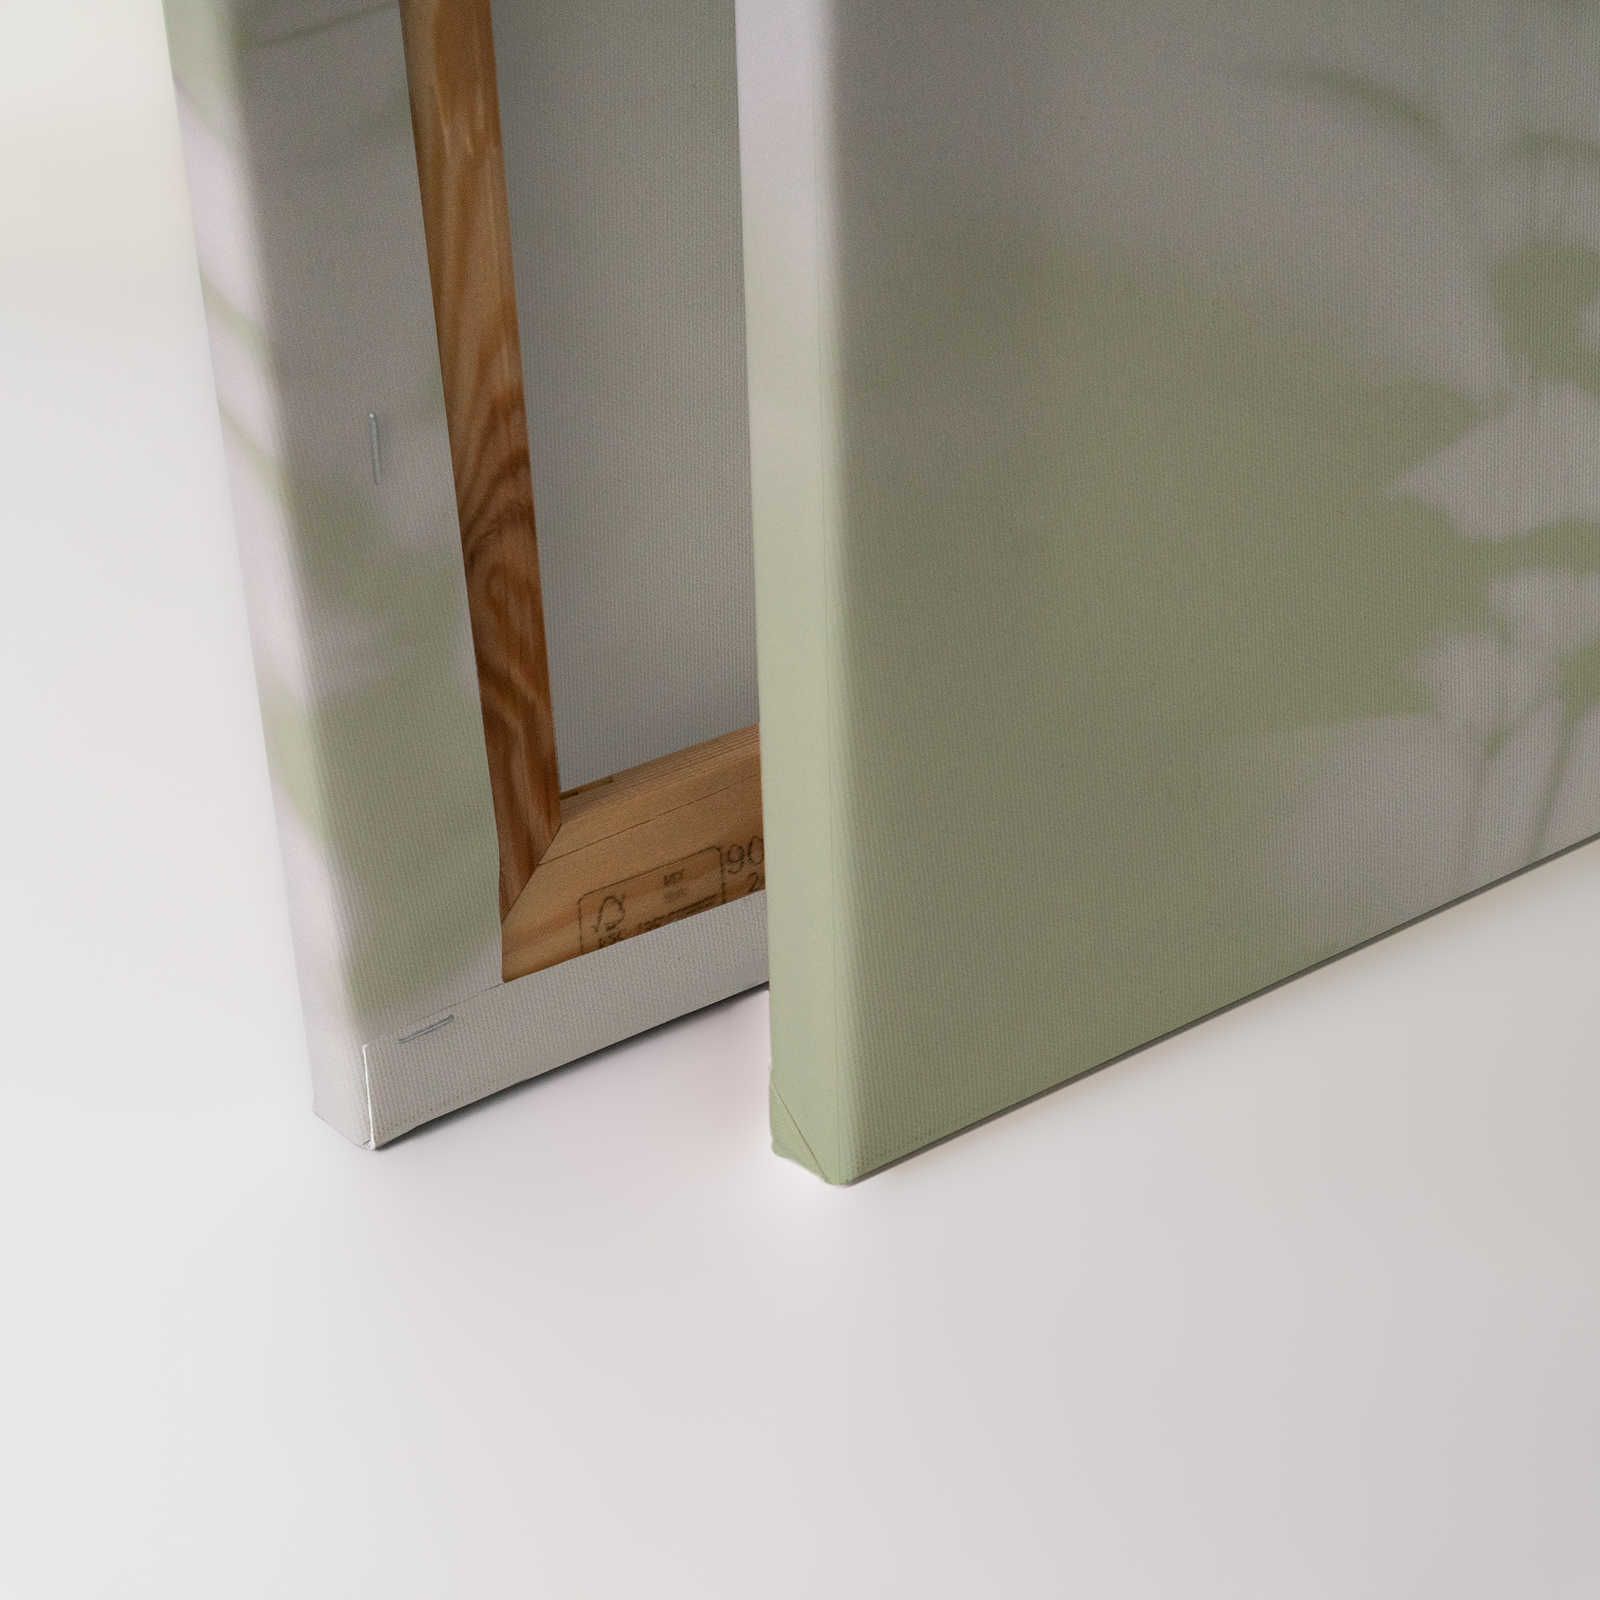             Shadow Room 3 - Lienzo Naturaleza Verde y Blanco, Diseño Desvanecido - 0.90 m x 0.60 m
        